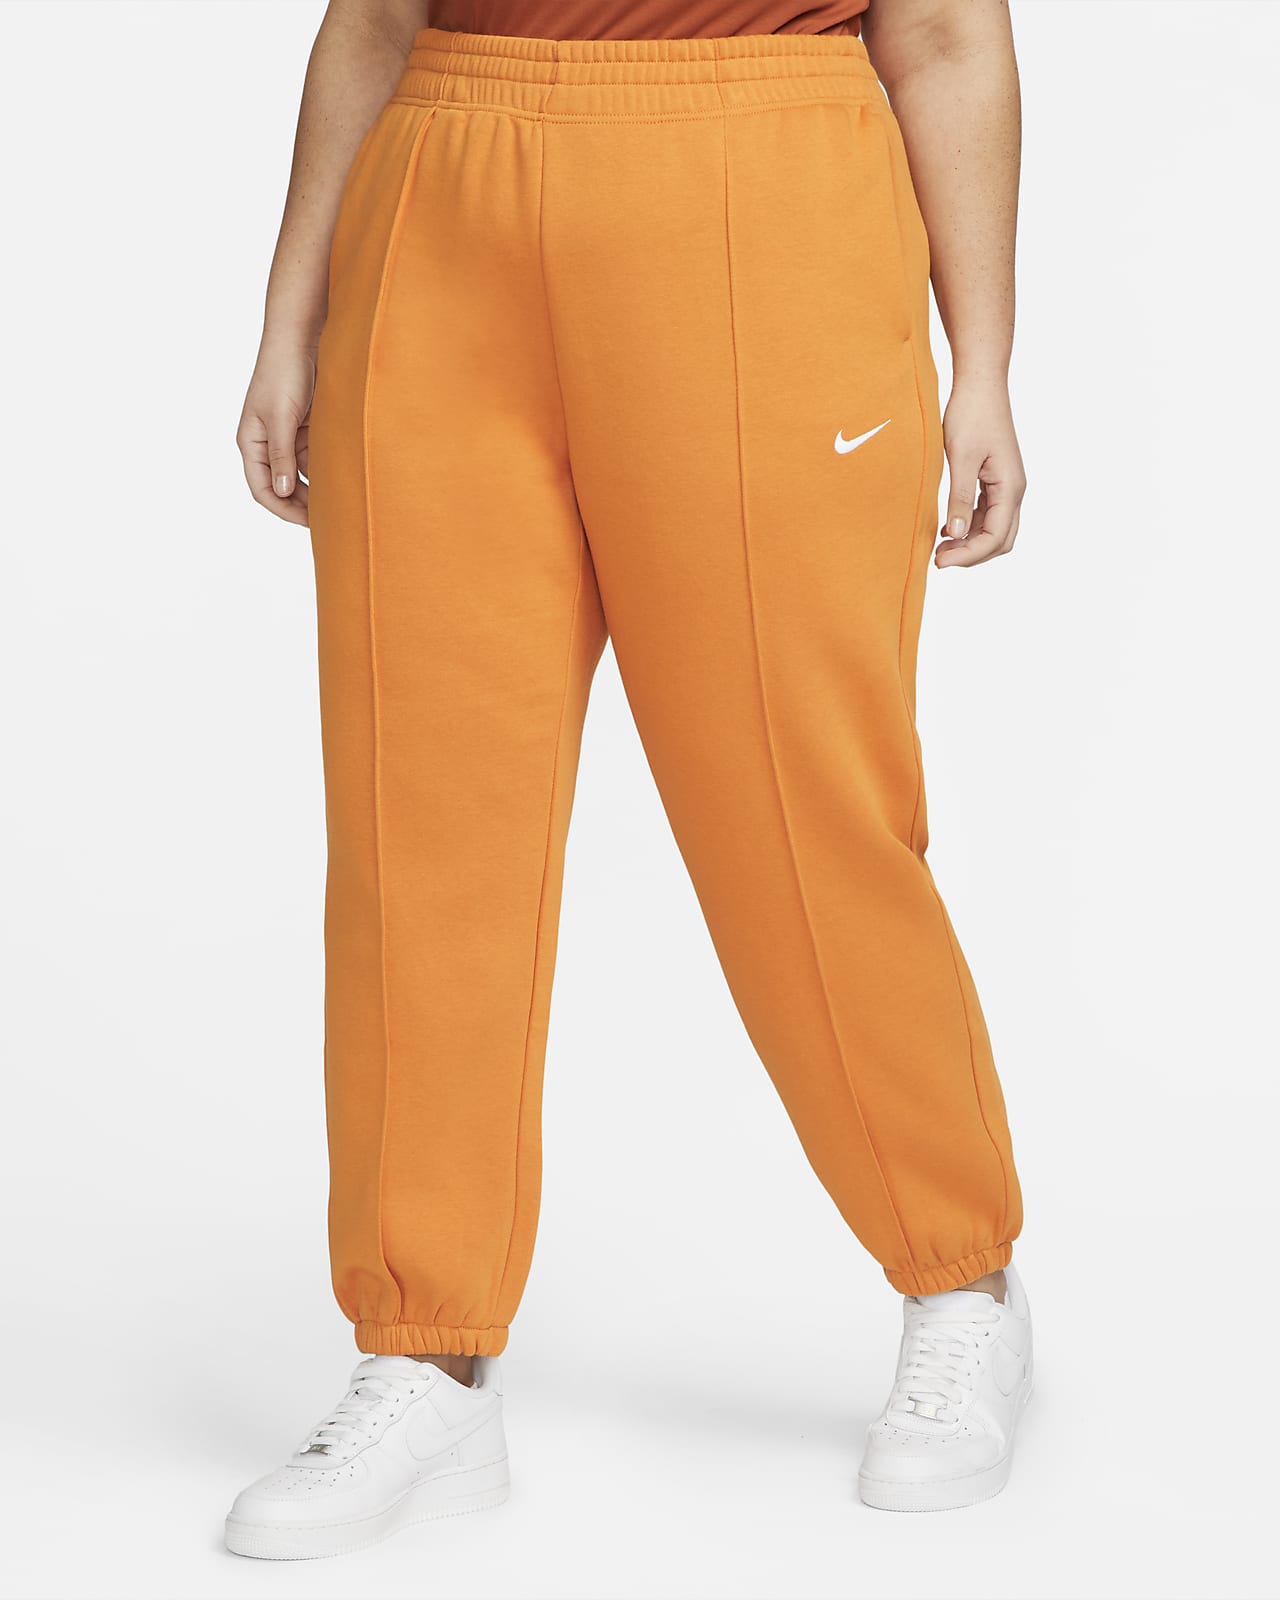 Damskie spodnie z dzianiny Nike Sportswear Trend (duże rozmiary)